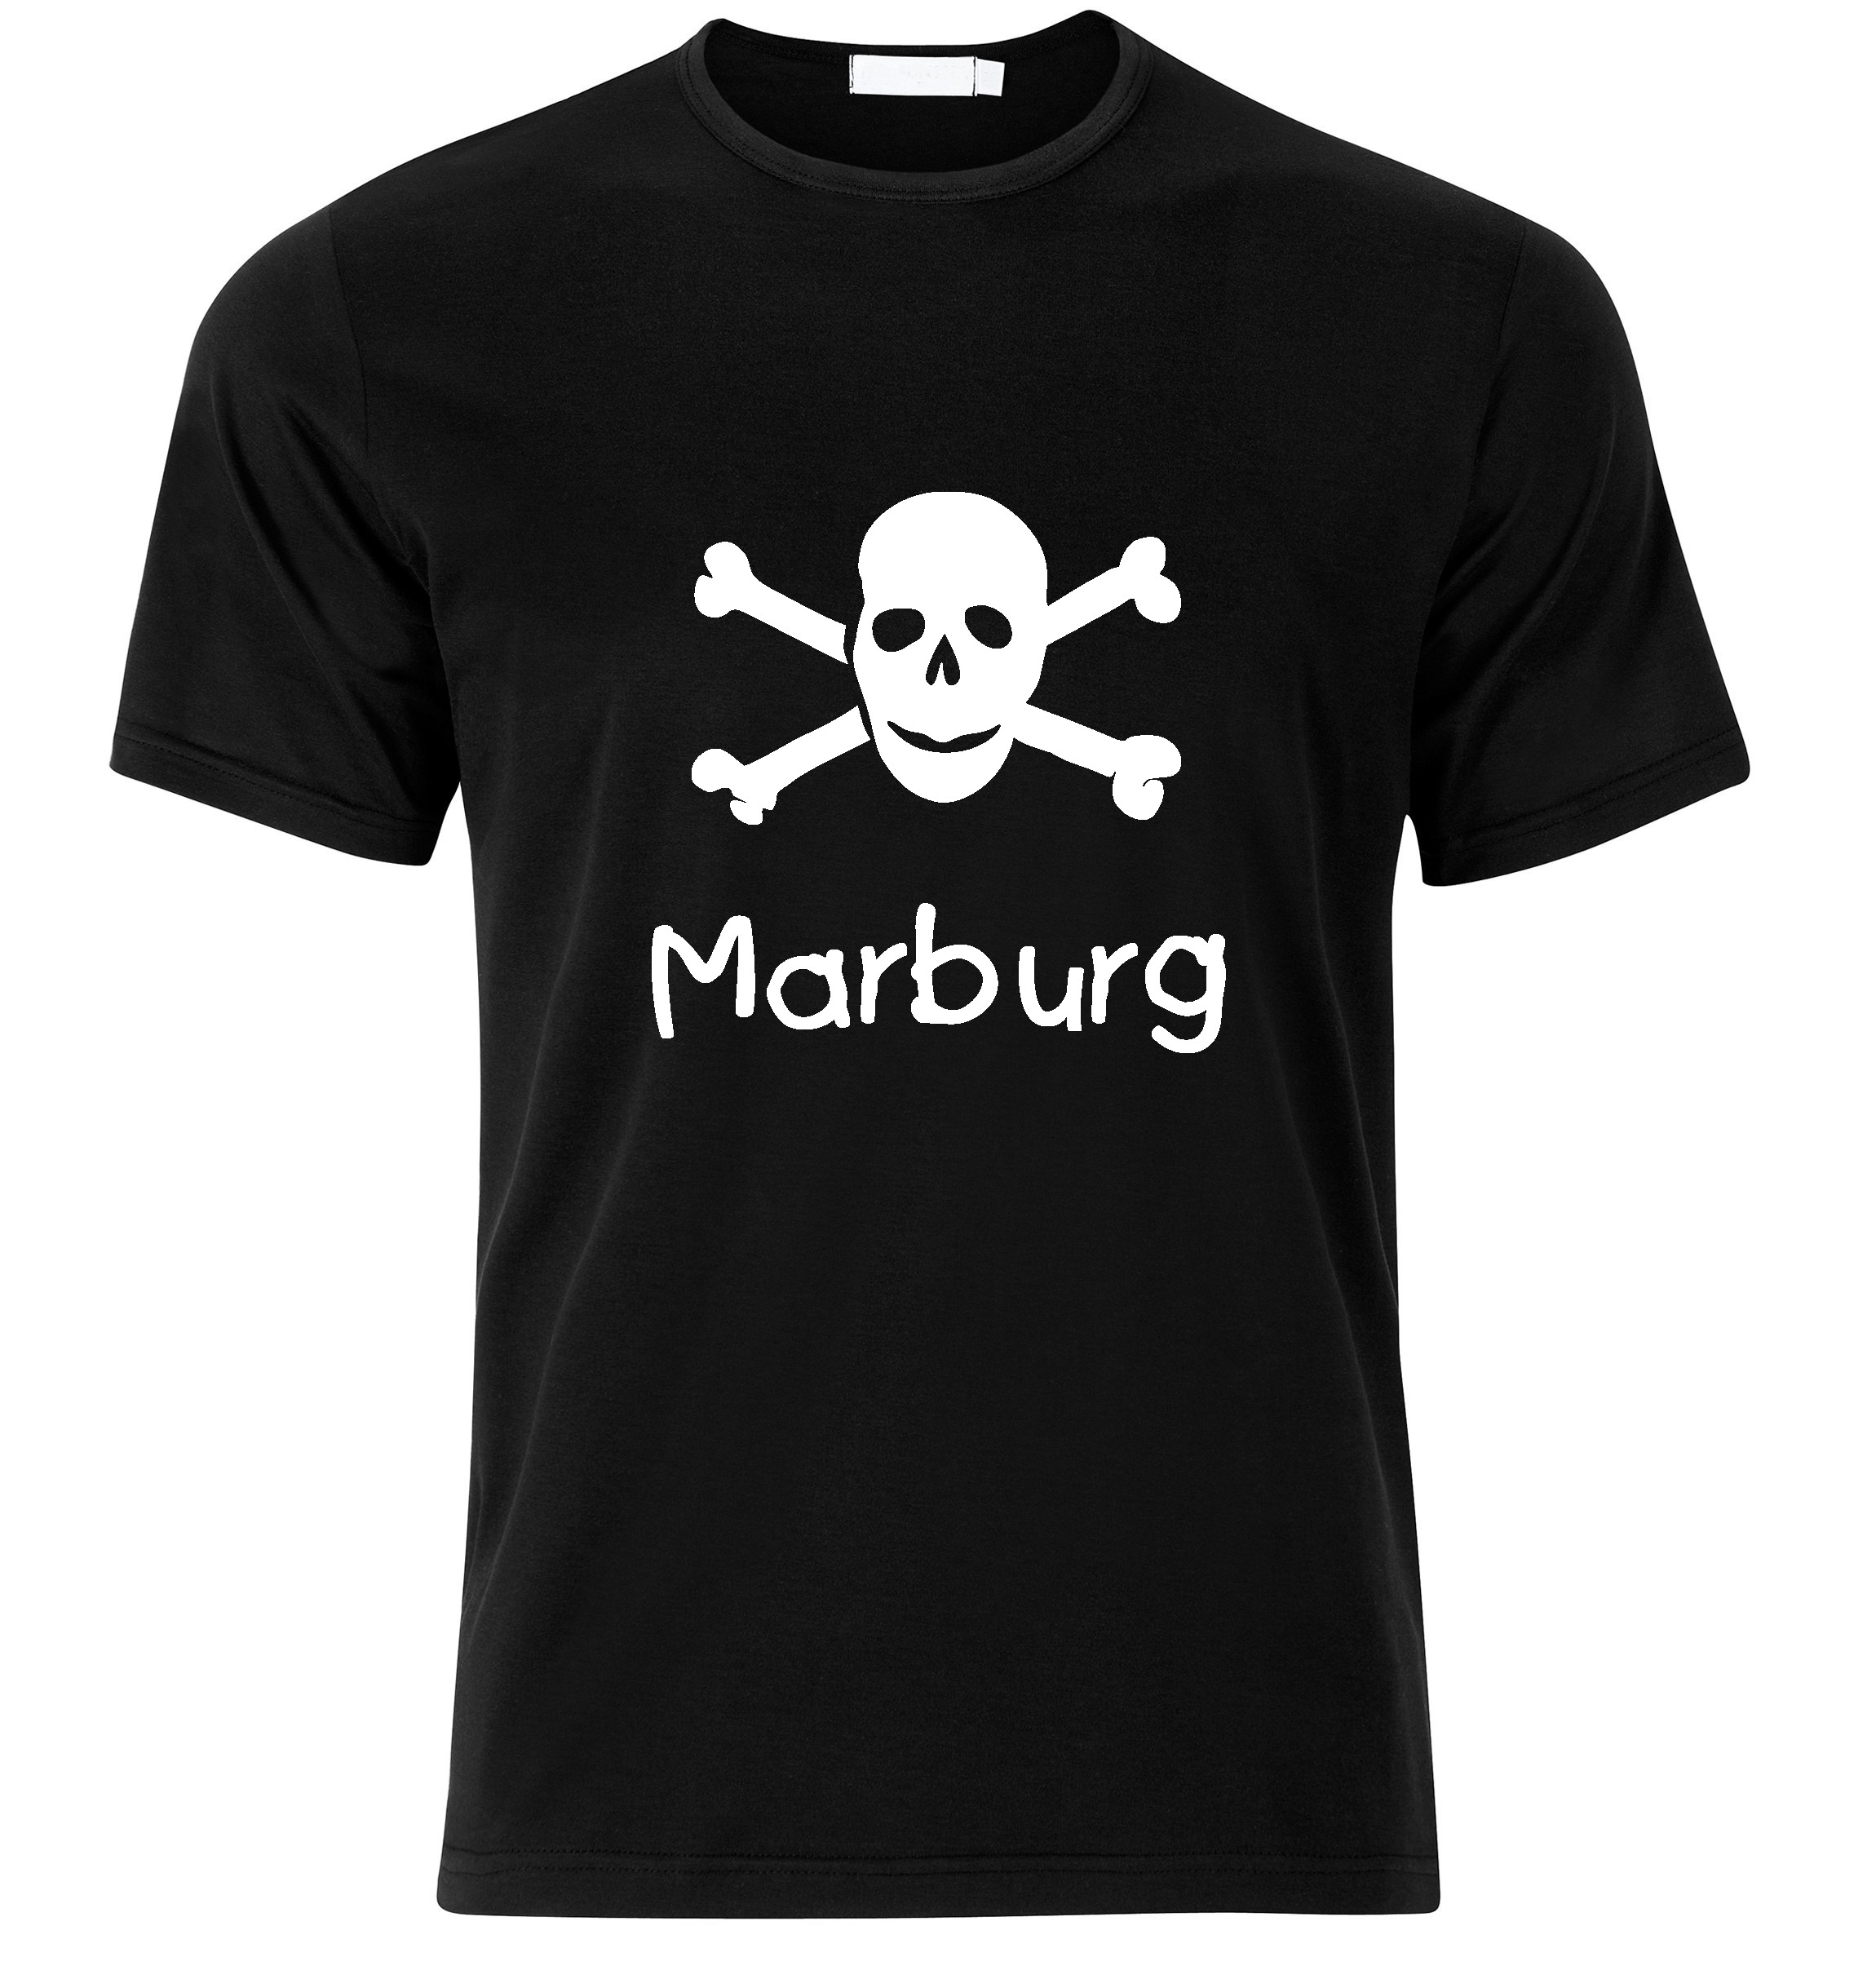 T-Shirt Marburg Jolly Roger, Totenkopf